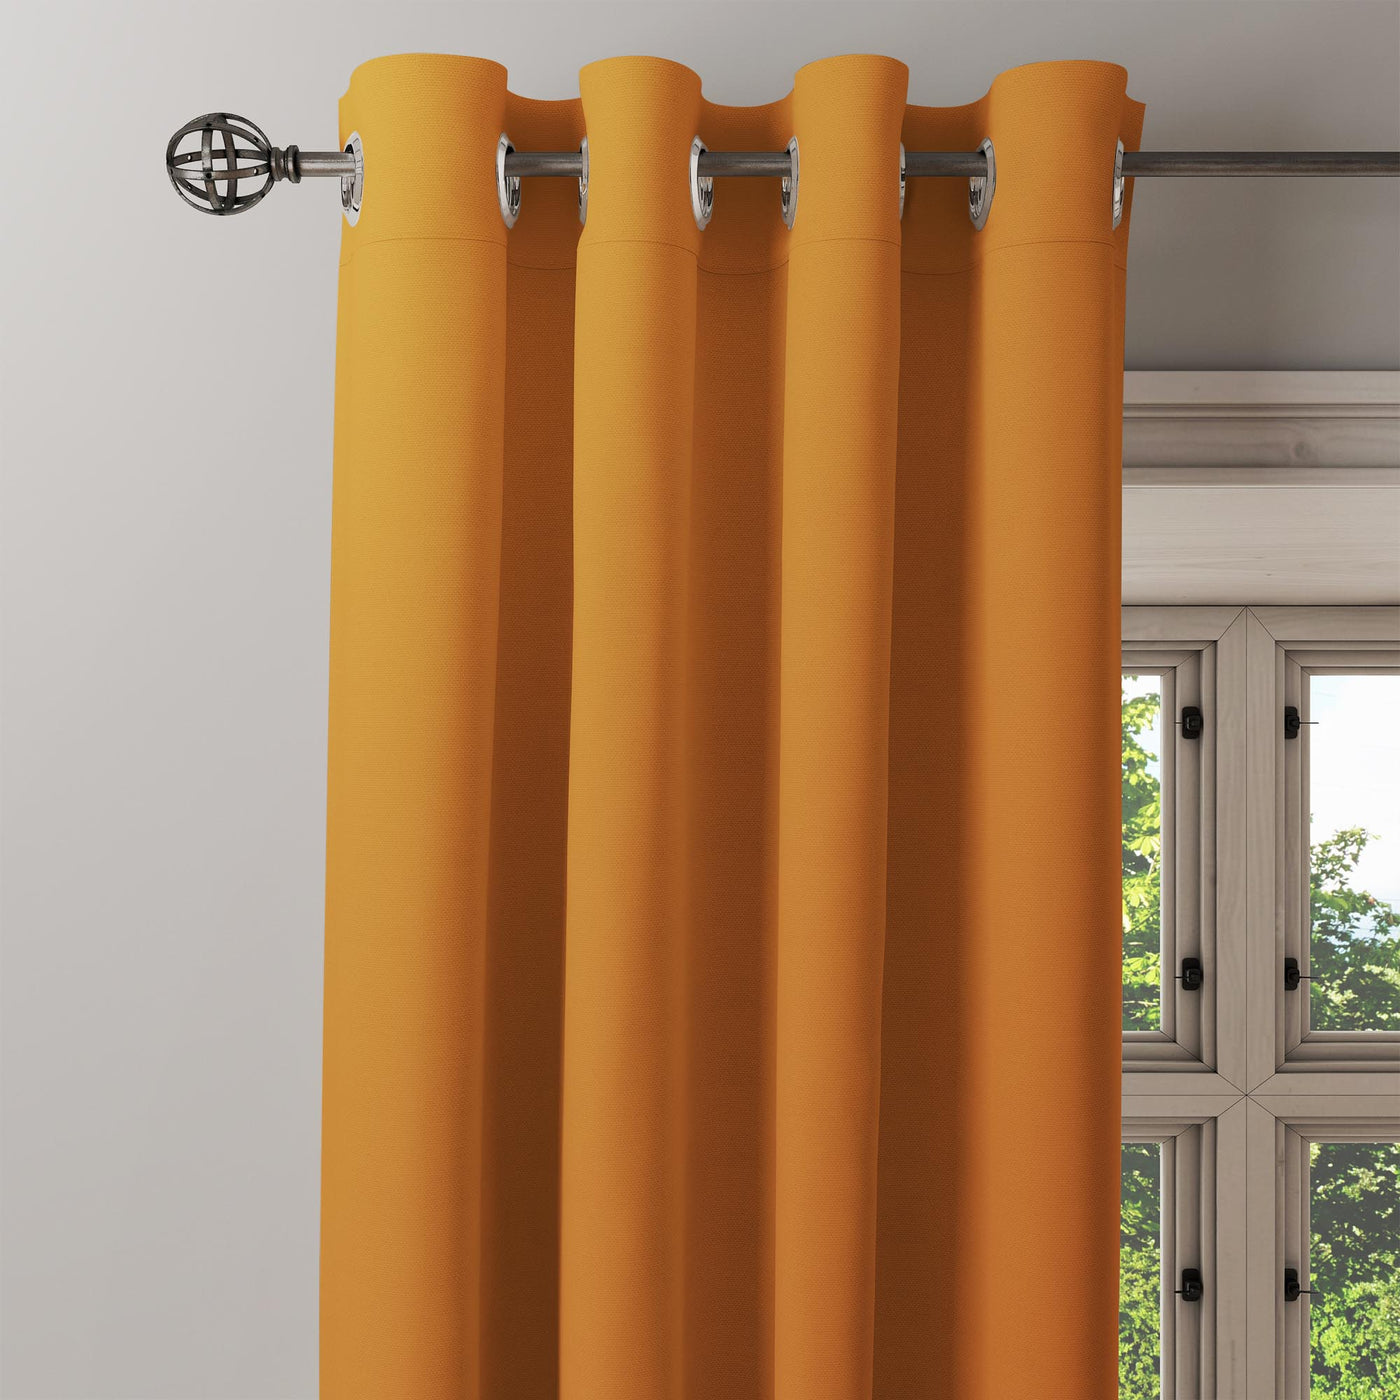 Orange curtain